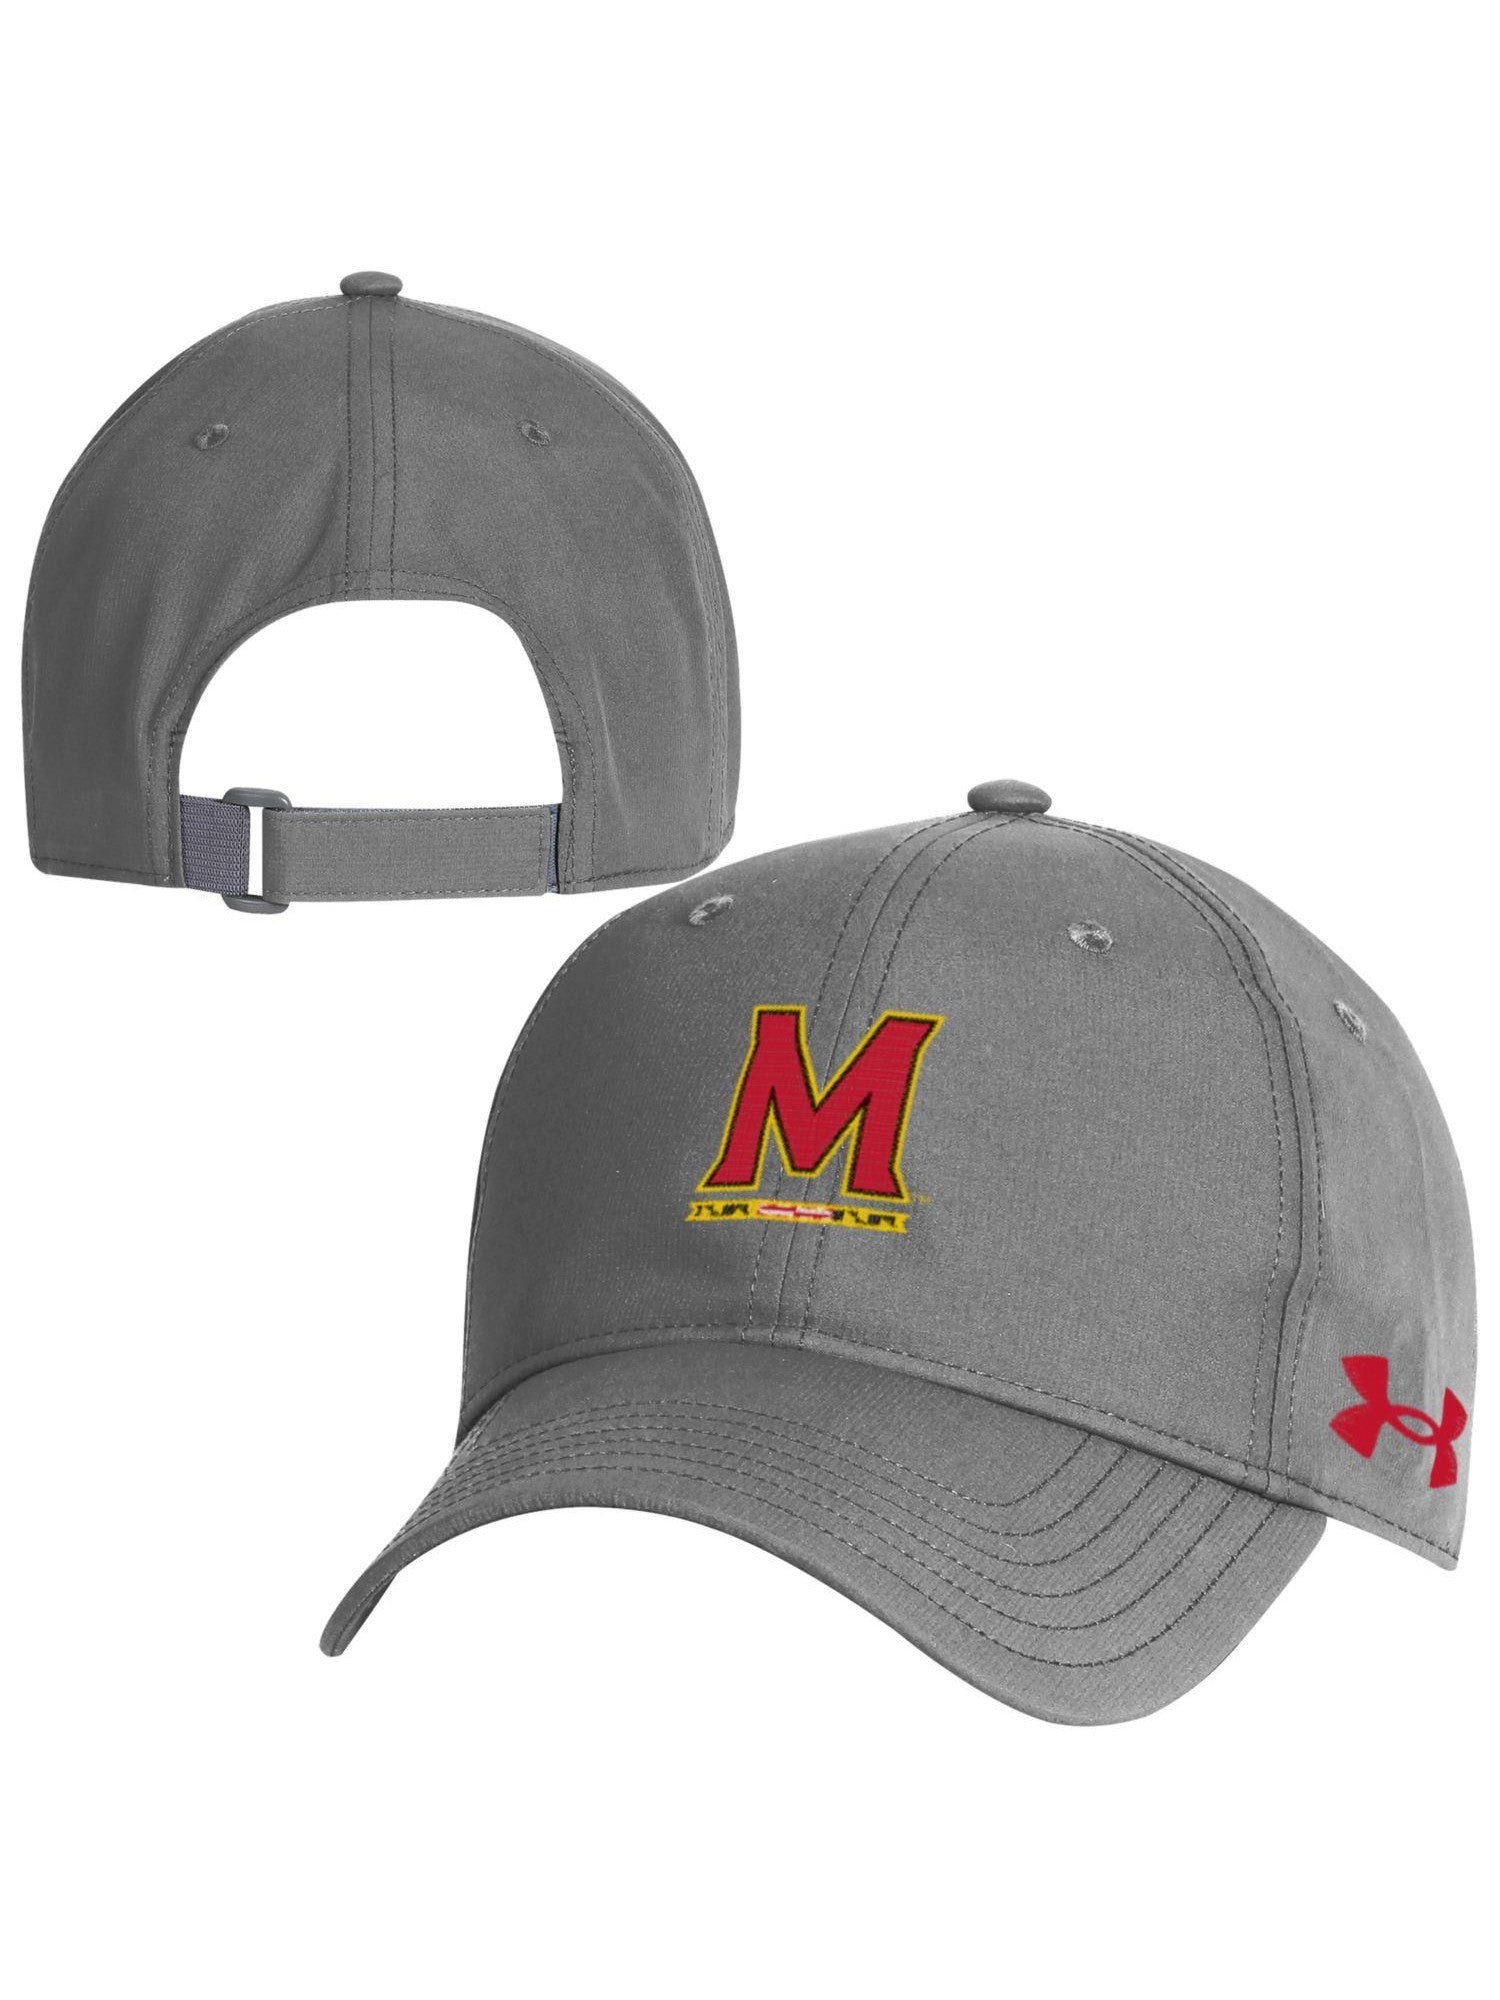 Baseball of Armor University (Grey) Maryland Maryland Gifts Under – Cap